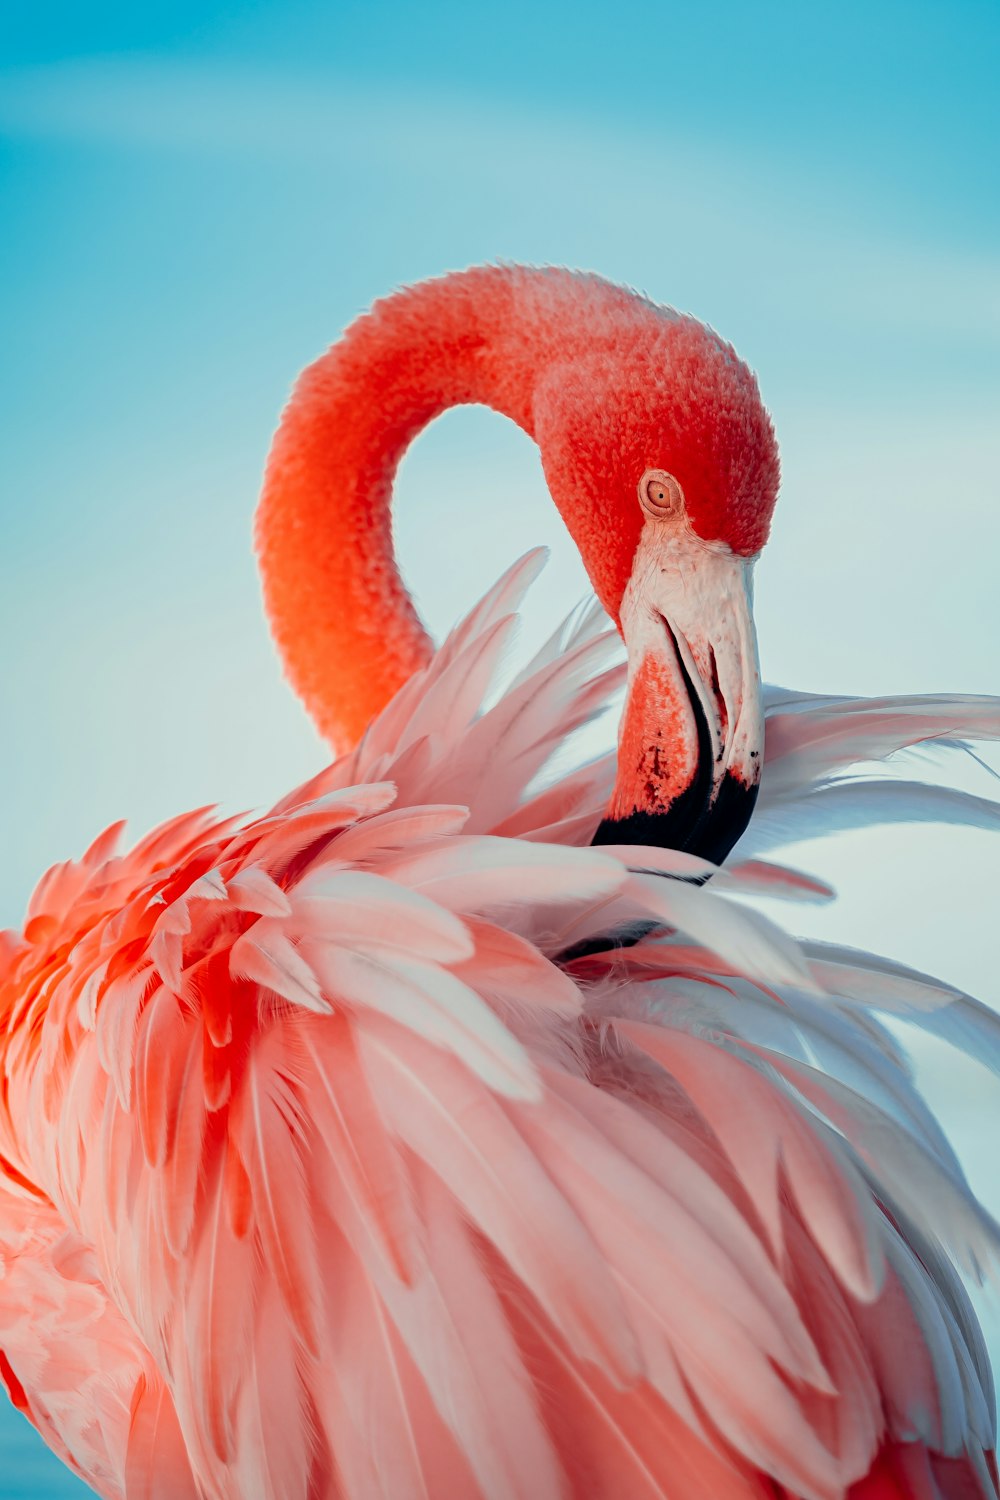 Pink flamingo in close up photography photo – Free Animal Image on Unsplash